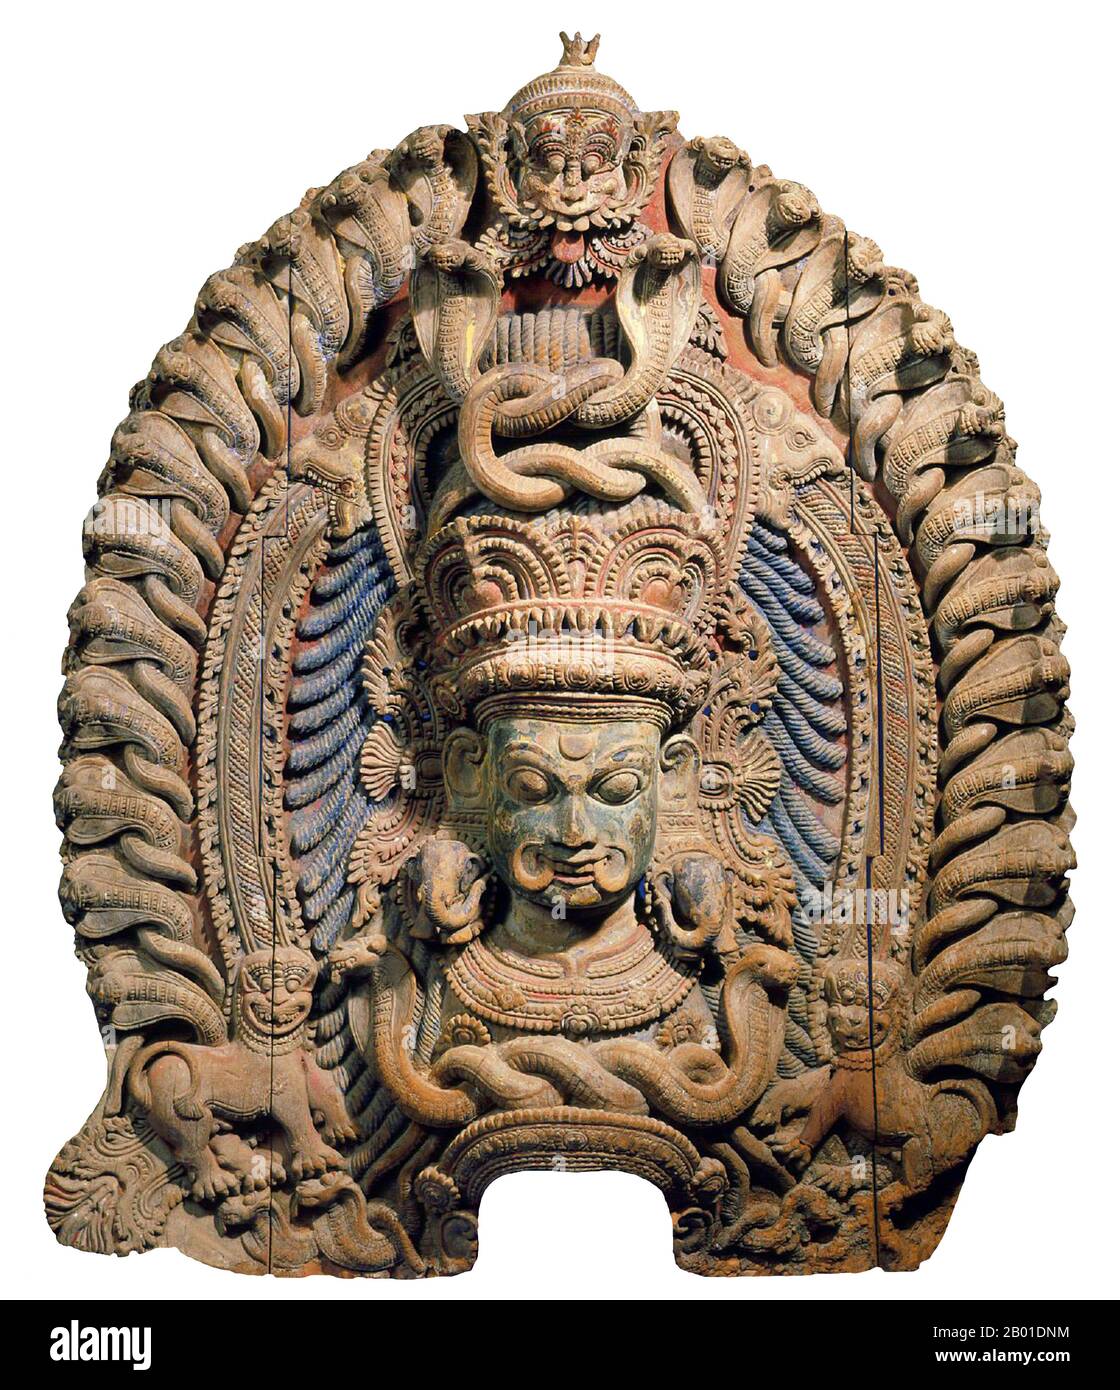 India: L'indirizzo della Danzatrice della Dea Kali. Scultura in legno dipinto, Kerala, fine 15th ° secolo. Kālī è la dea indù associata all'energia eterna. 'Lei che distrugge'.il nome Kali deriva da kāla, che significa nero, tempo, morte, signore della morte, Shiva. Kali significa 'il nero'. Poiché Shiva si chiama kāla - il tempo eterno, Kālī, la sua consorte, significa anche 'tempo' o 'morte' (come nel tempo è venuto). Quindi, Kali è considerata la dea del tempo e del cambiamento. Anche se a volte presentato come scuro e violento, la sua prima incarnazione come una figura di annientamento ha ancora una certa influenza. Foto Stock